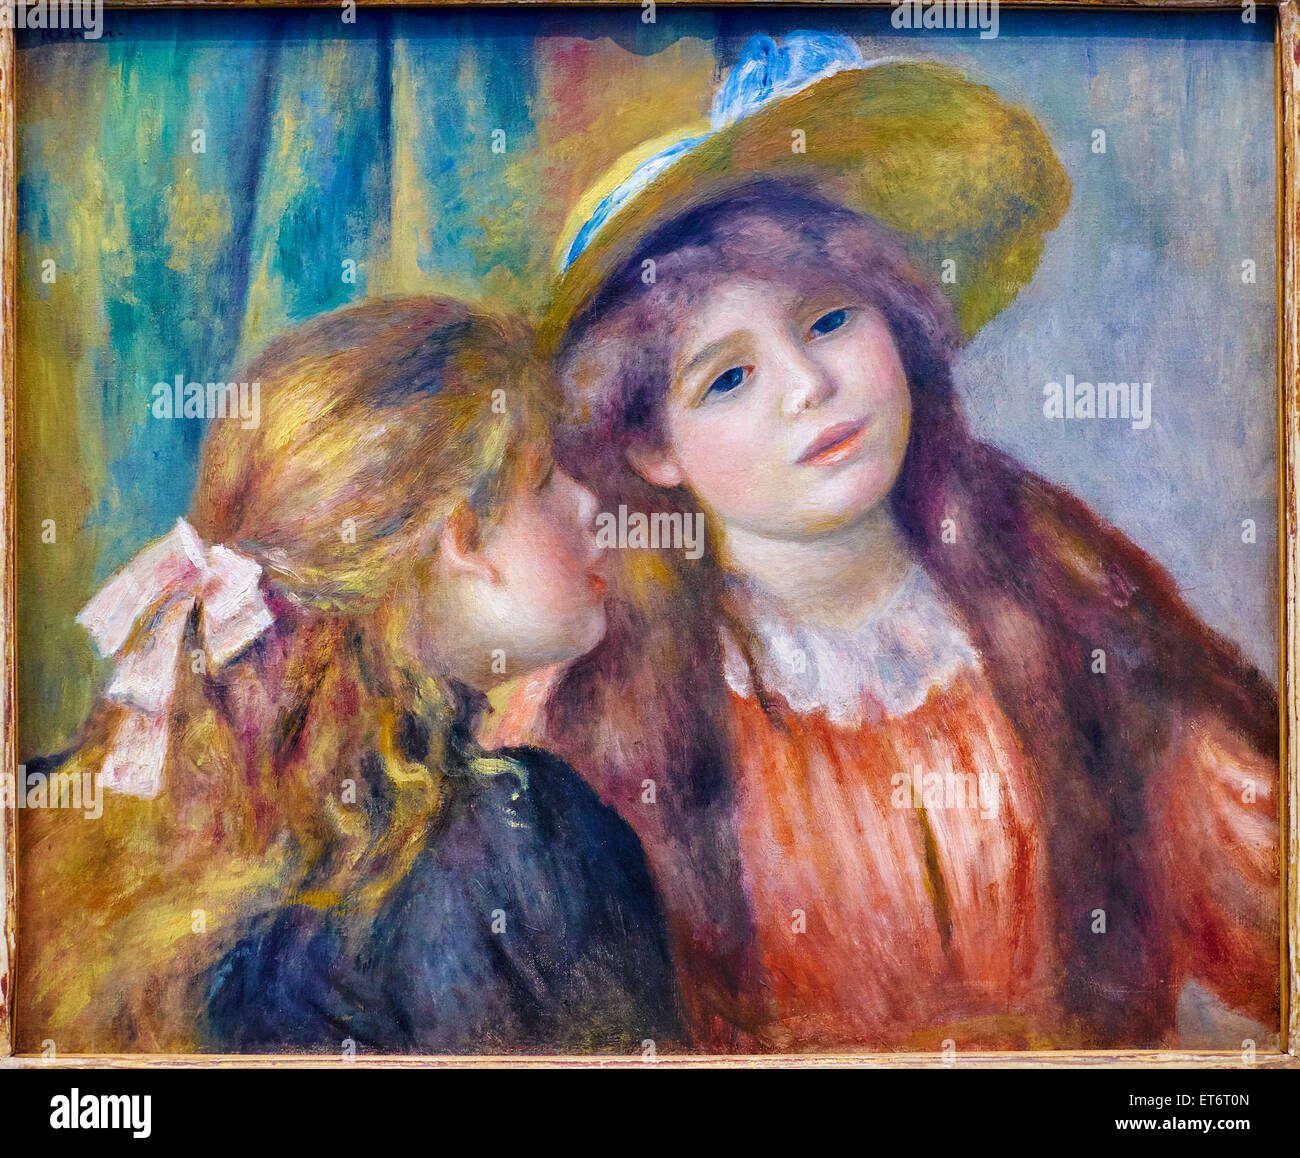 Francia, Parigi, les Tuileries, museo di Orangerie, Pierre-August Renoir pittura, portrait de deux fillettes Foto Stock